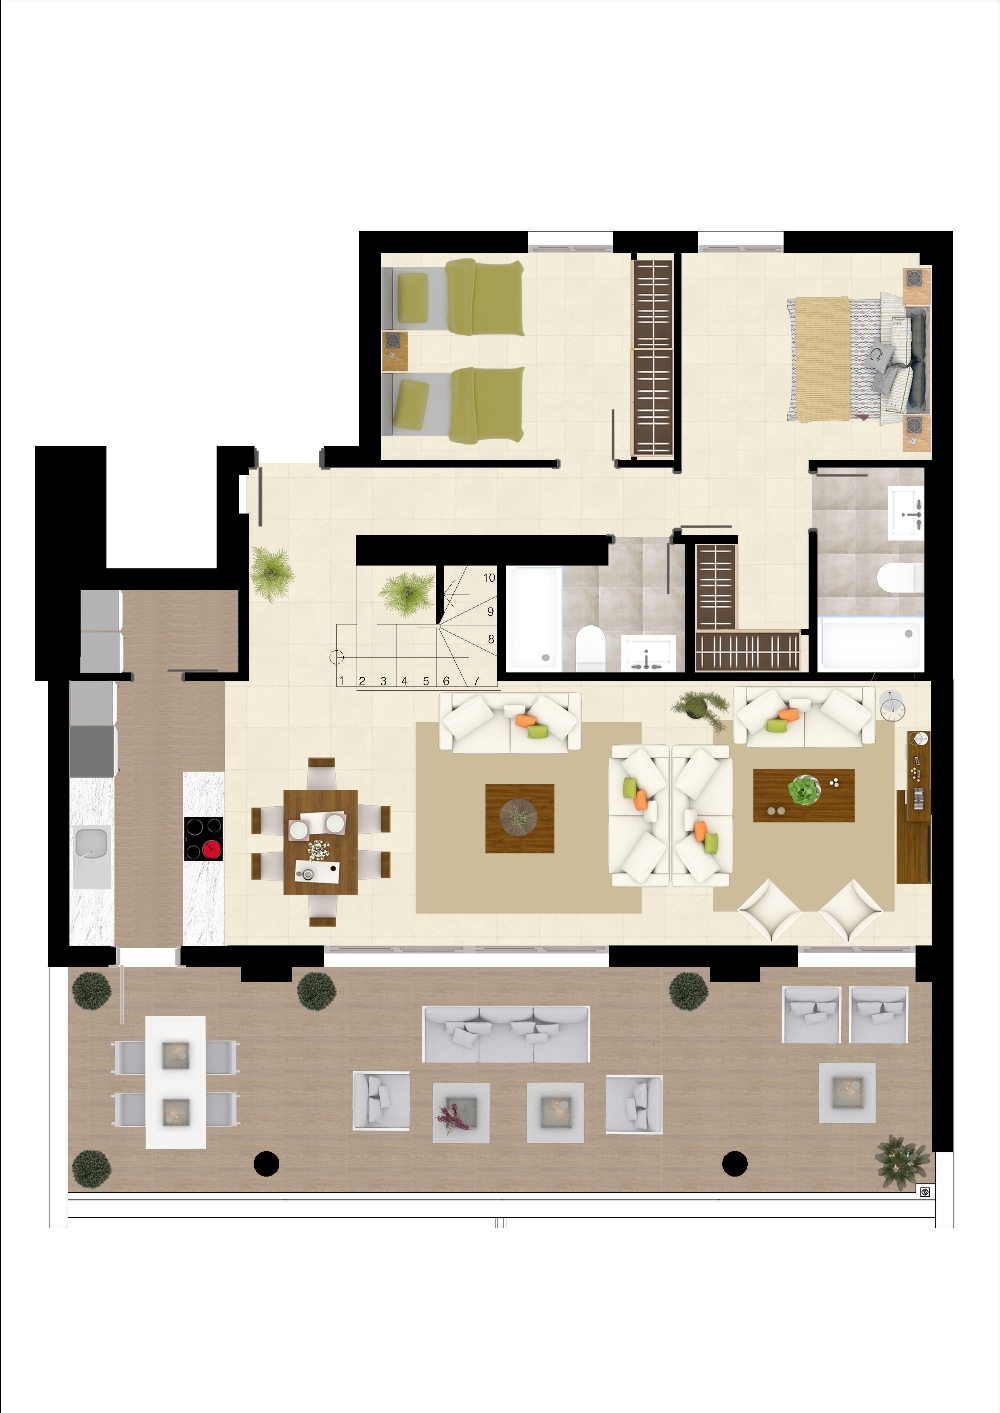 Example floor plan